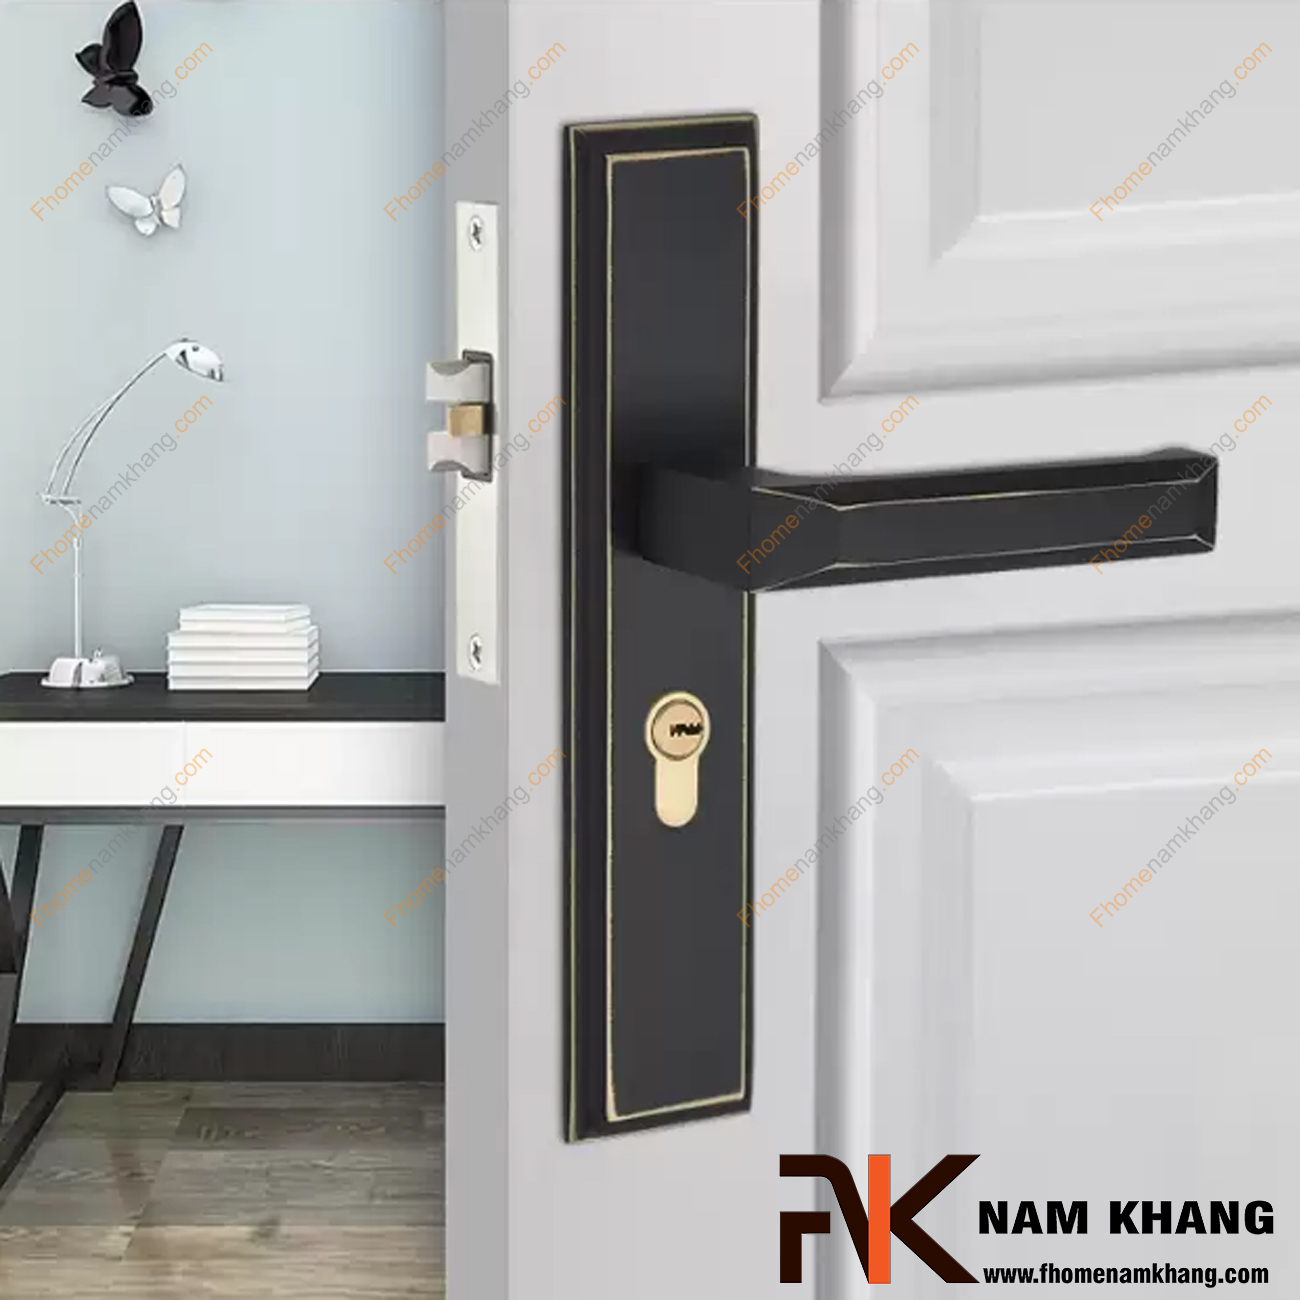 Khóa cửa chính dạng ốp vuông màu đen viền vàng NK561L-BCF là dạng khóa cửa cao cấp được sử dụng chủ yếu dành cho dòng cửa chính và các các dạng của thông phòng.